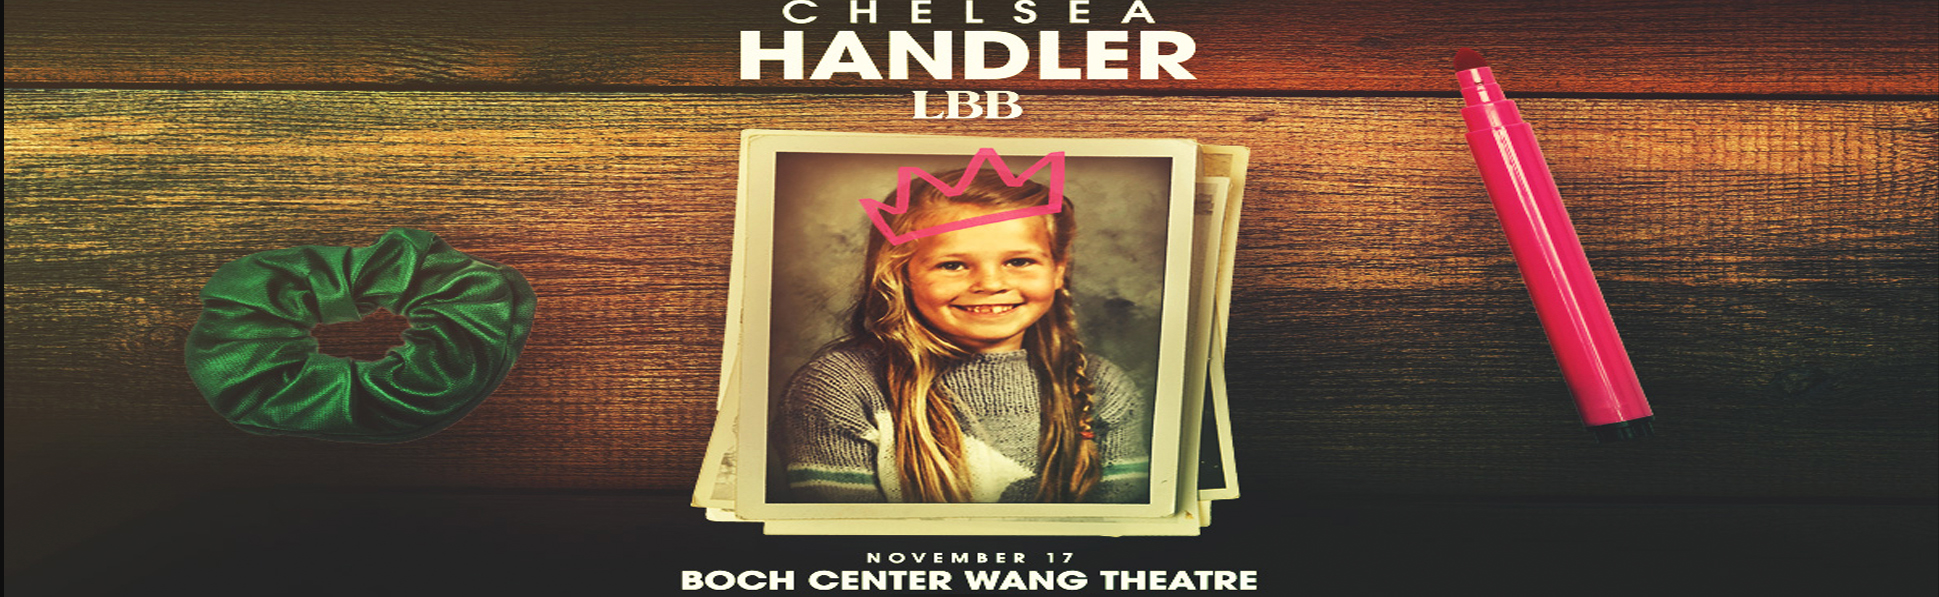 Chelsea Handler at Wang Theatre